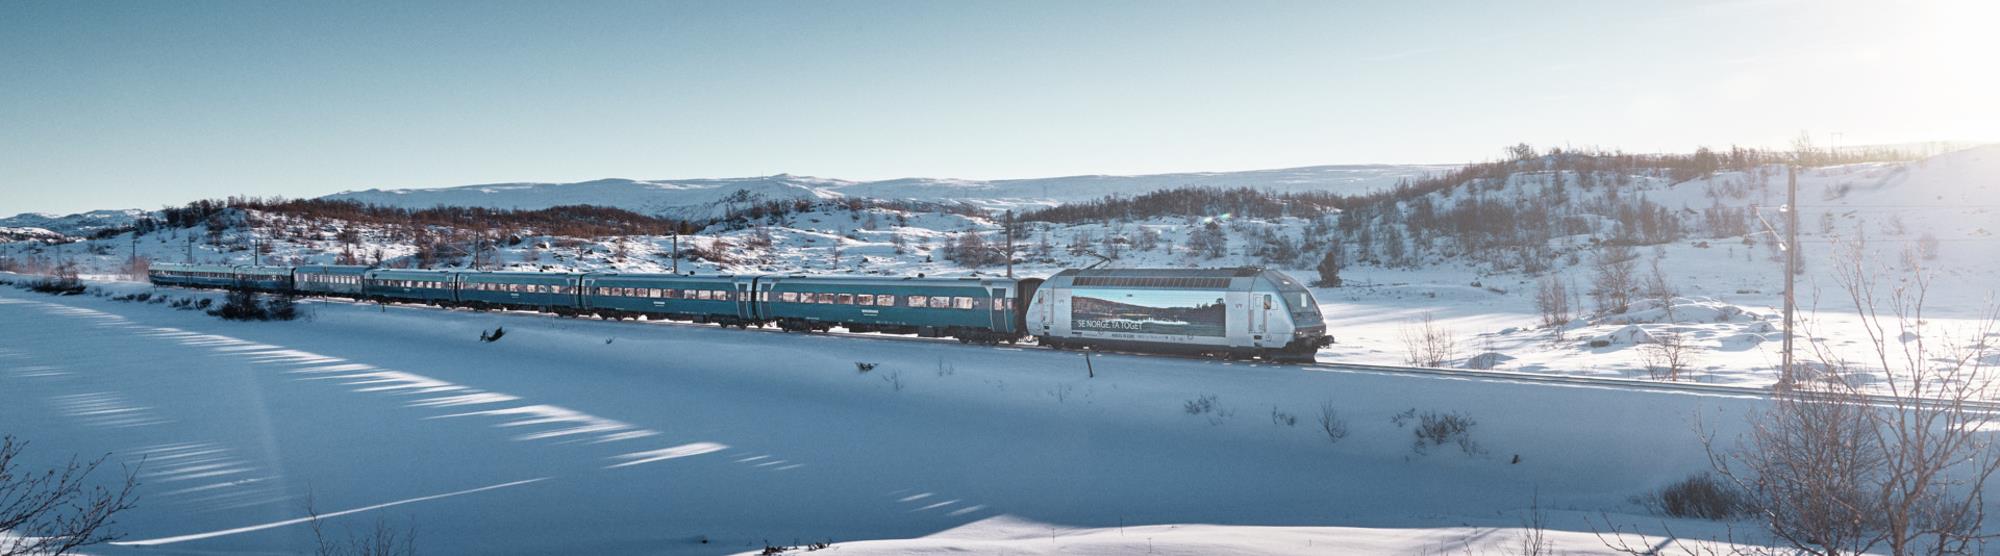 Reis med tog mellom Oslo og Bergen